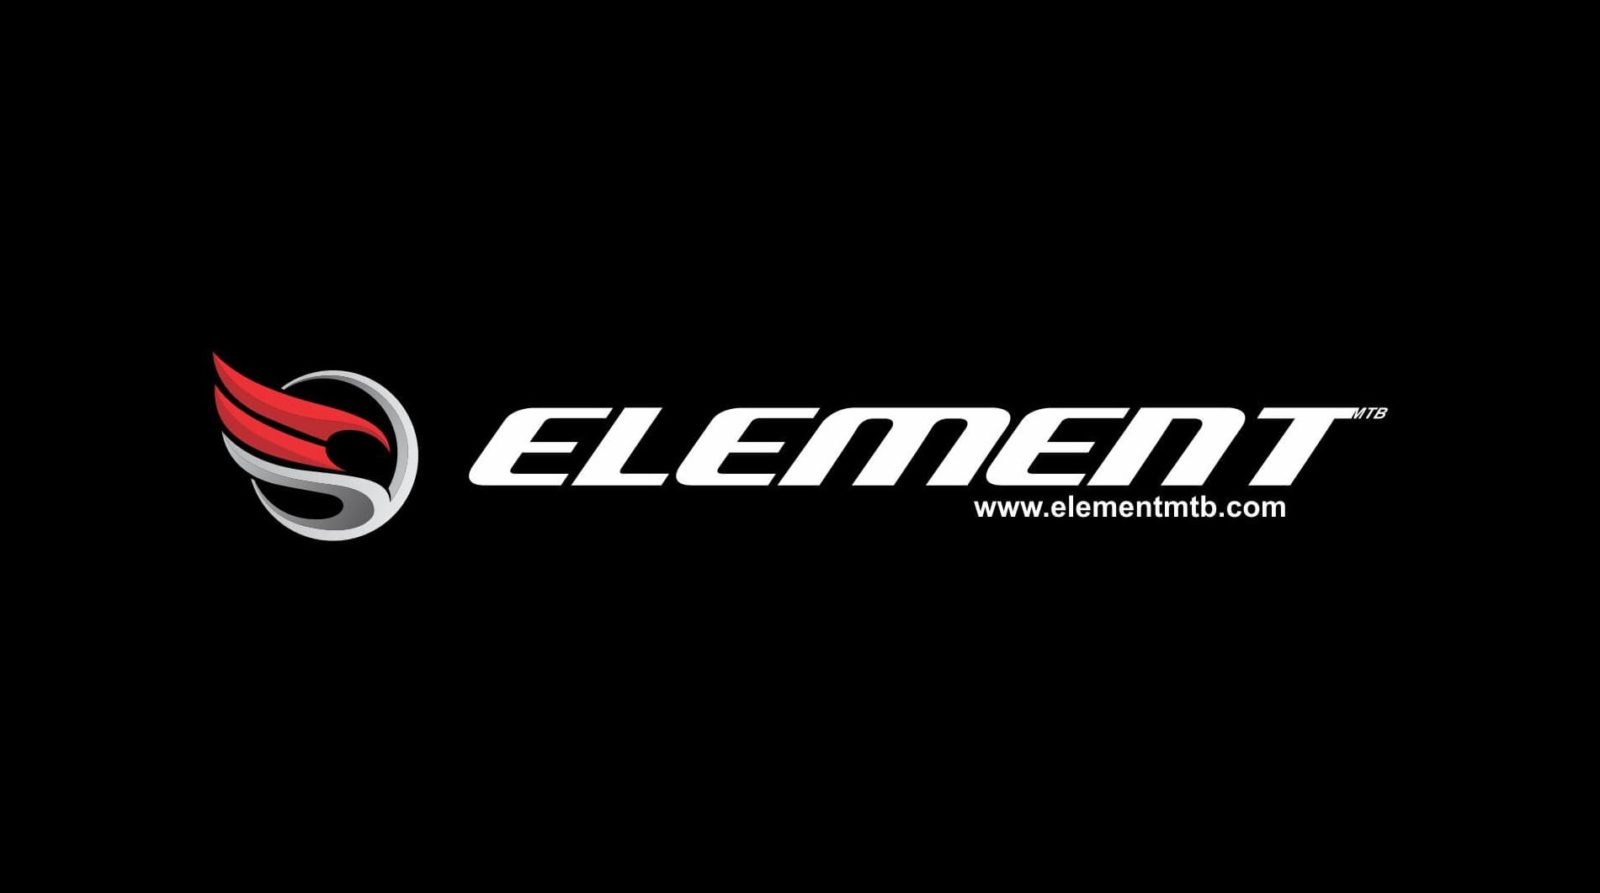 Daftar Harga Sepeda element termurah